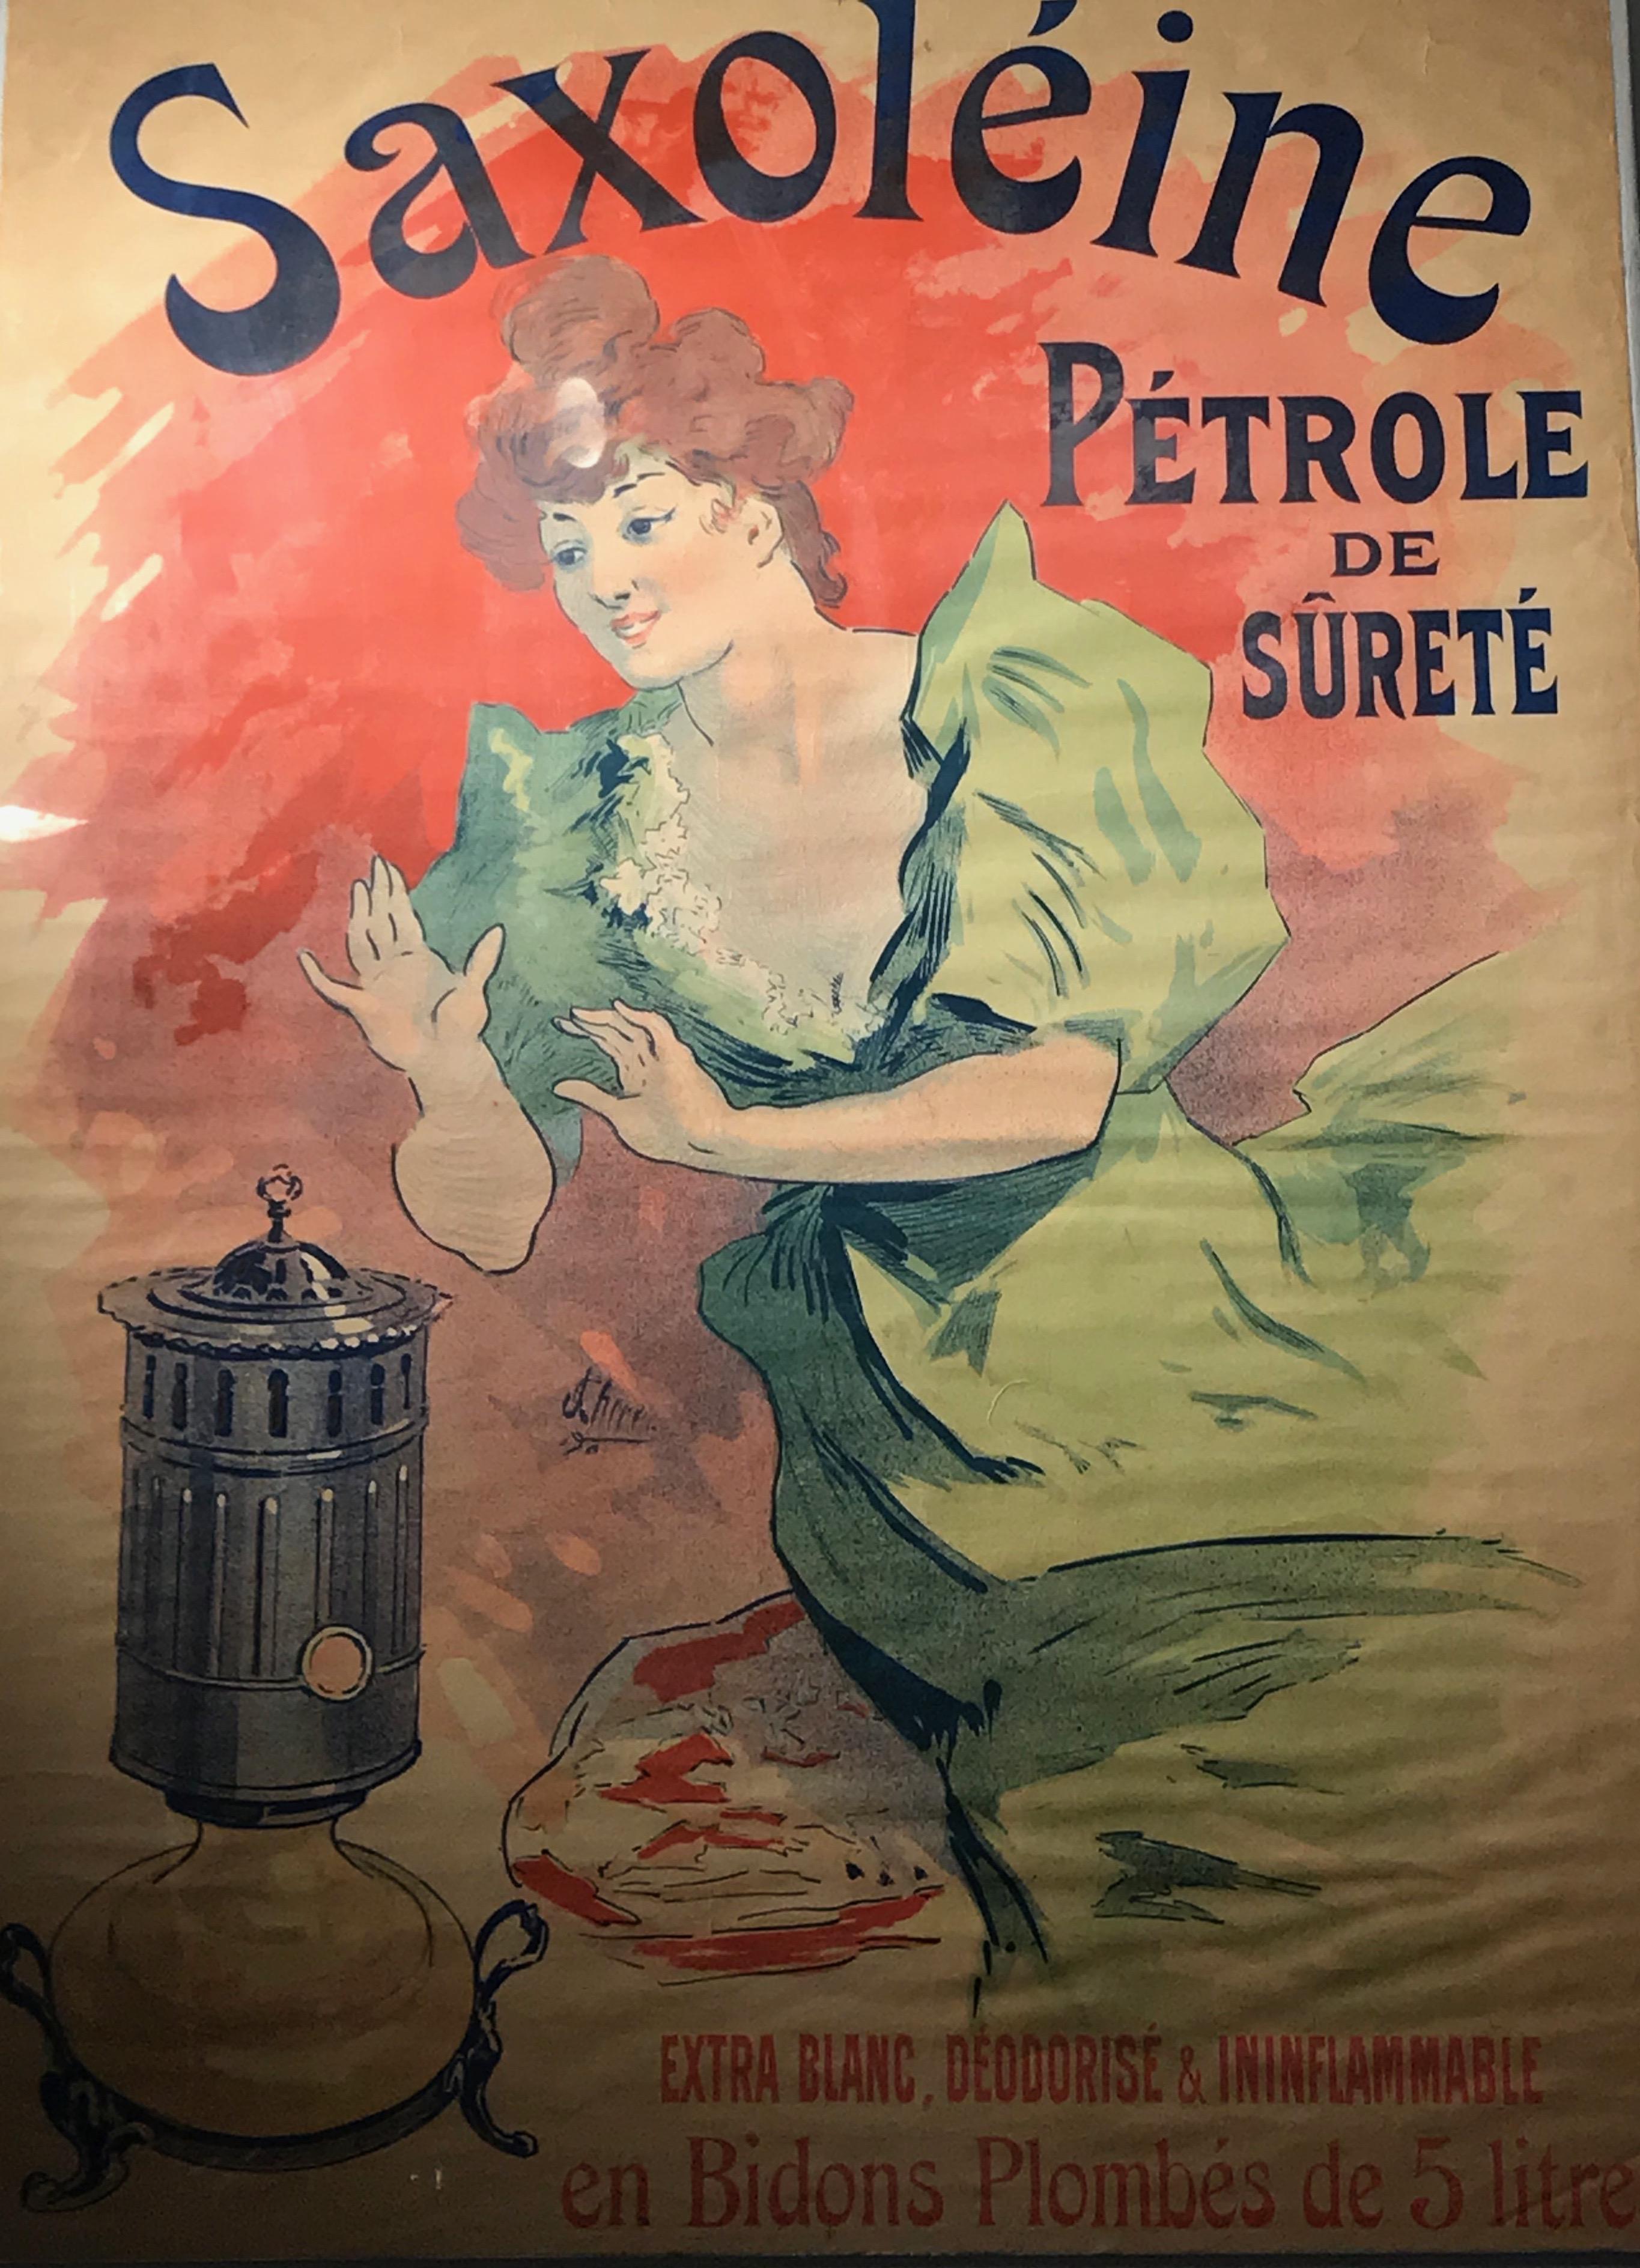 Affiche lithographique couleur originale Art nouveau français vintage pour Saxoléïne de Jules Chéret, 1900 (robe verte)

Catalogue raisonné : Lucy Broido, 